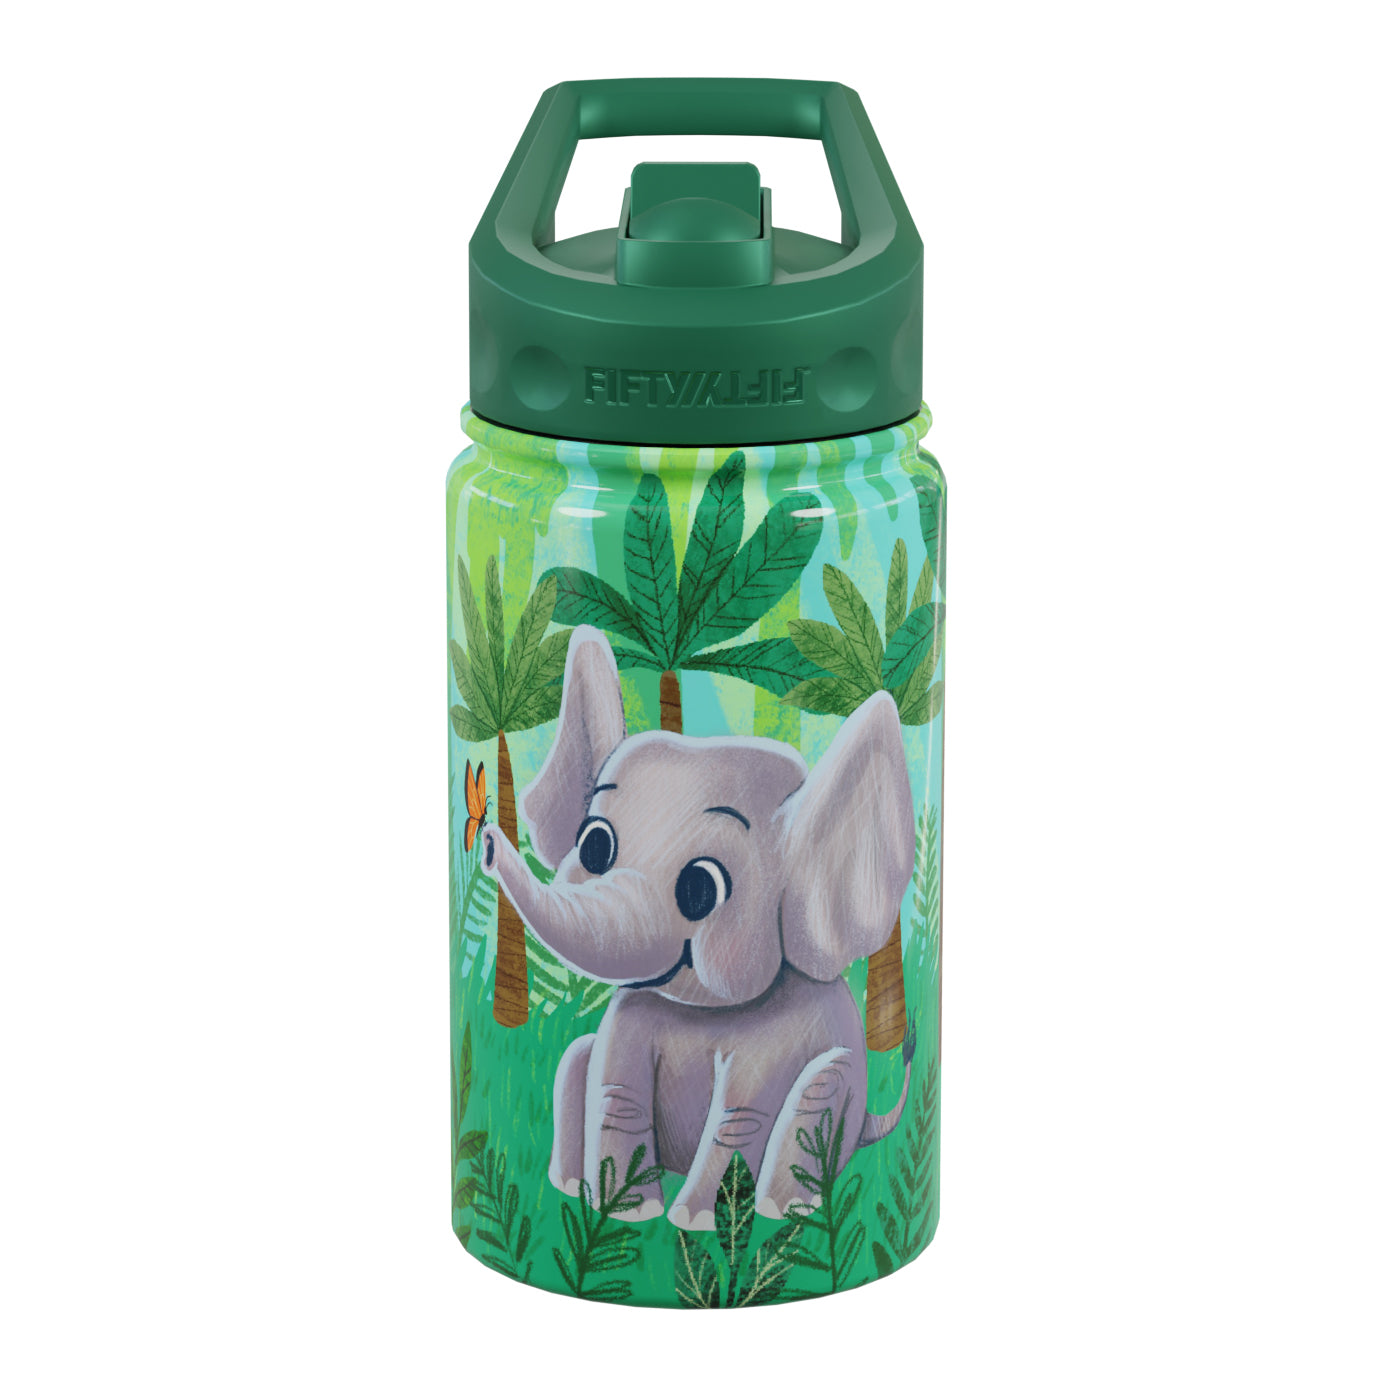 Elephant Baby Bottle Tumbler